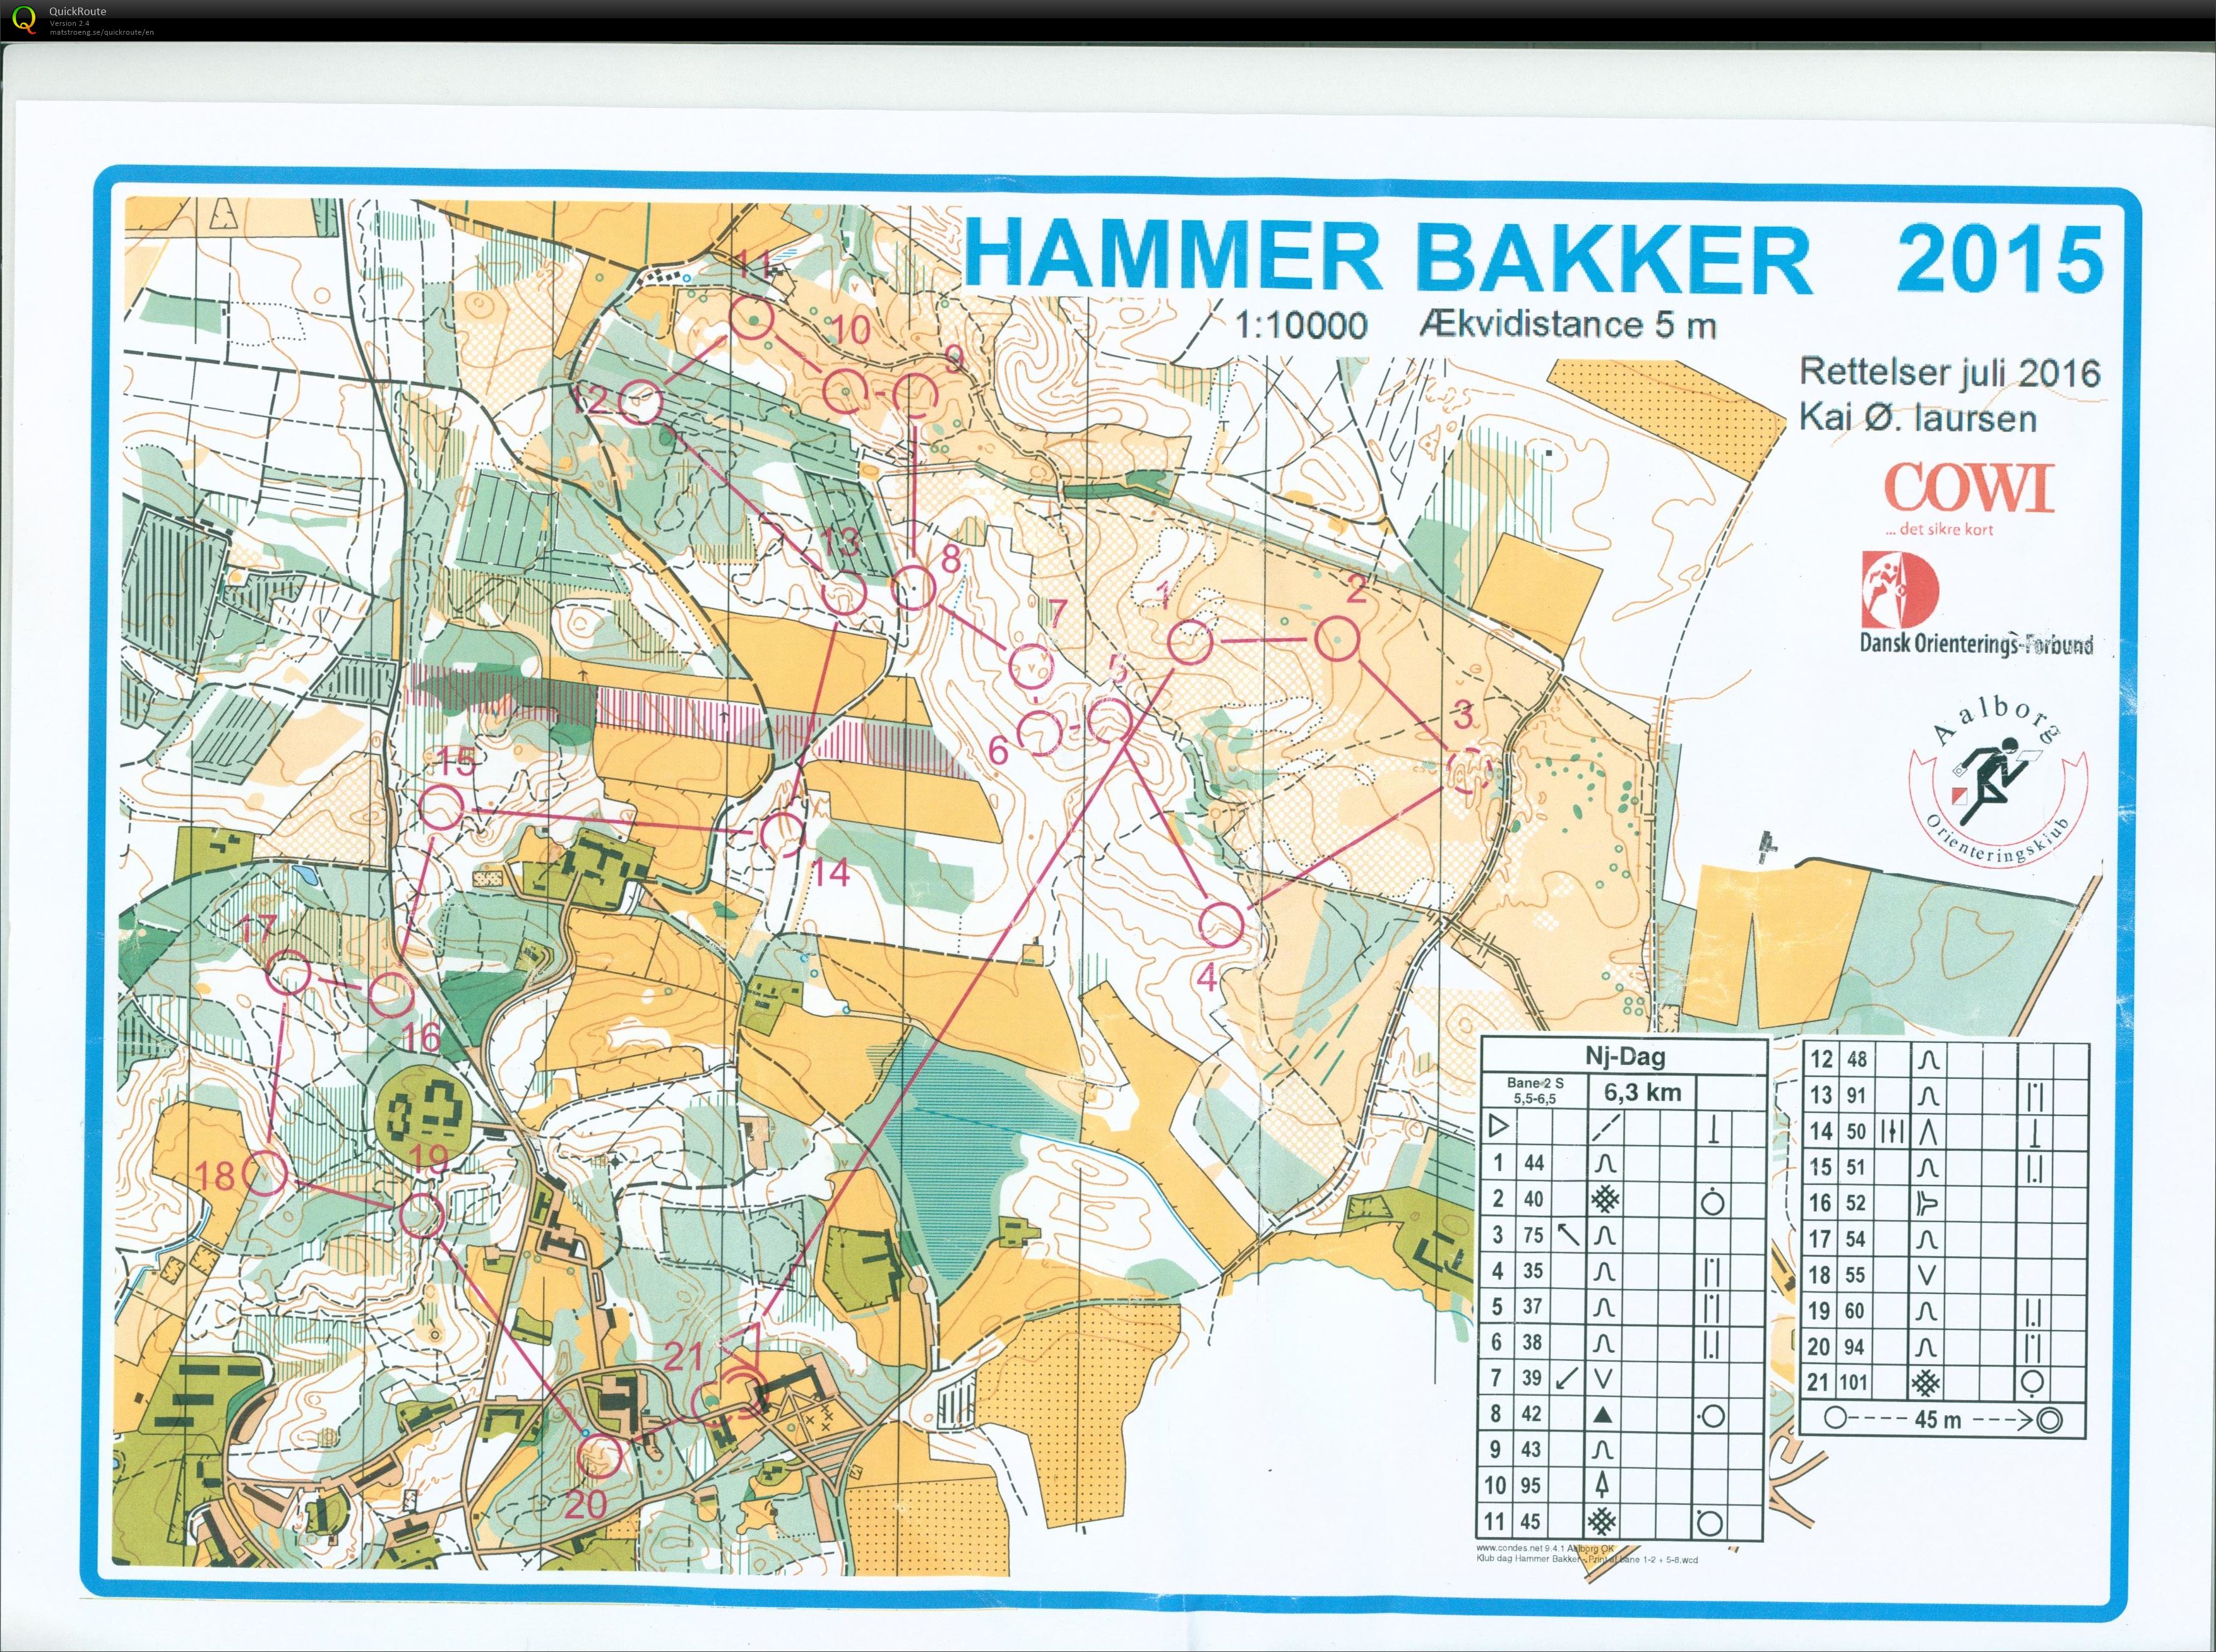 Hammer Bakker bane 2 Keld Gade (2016-11-13)